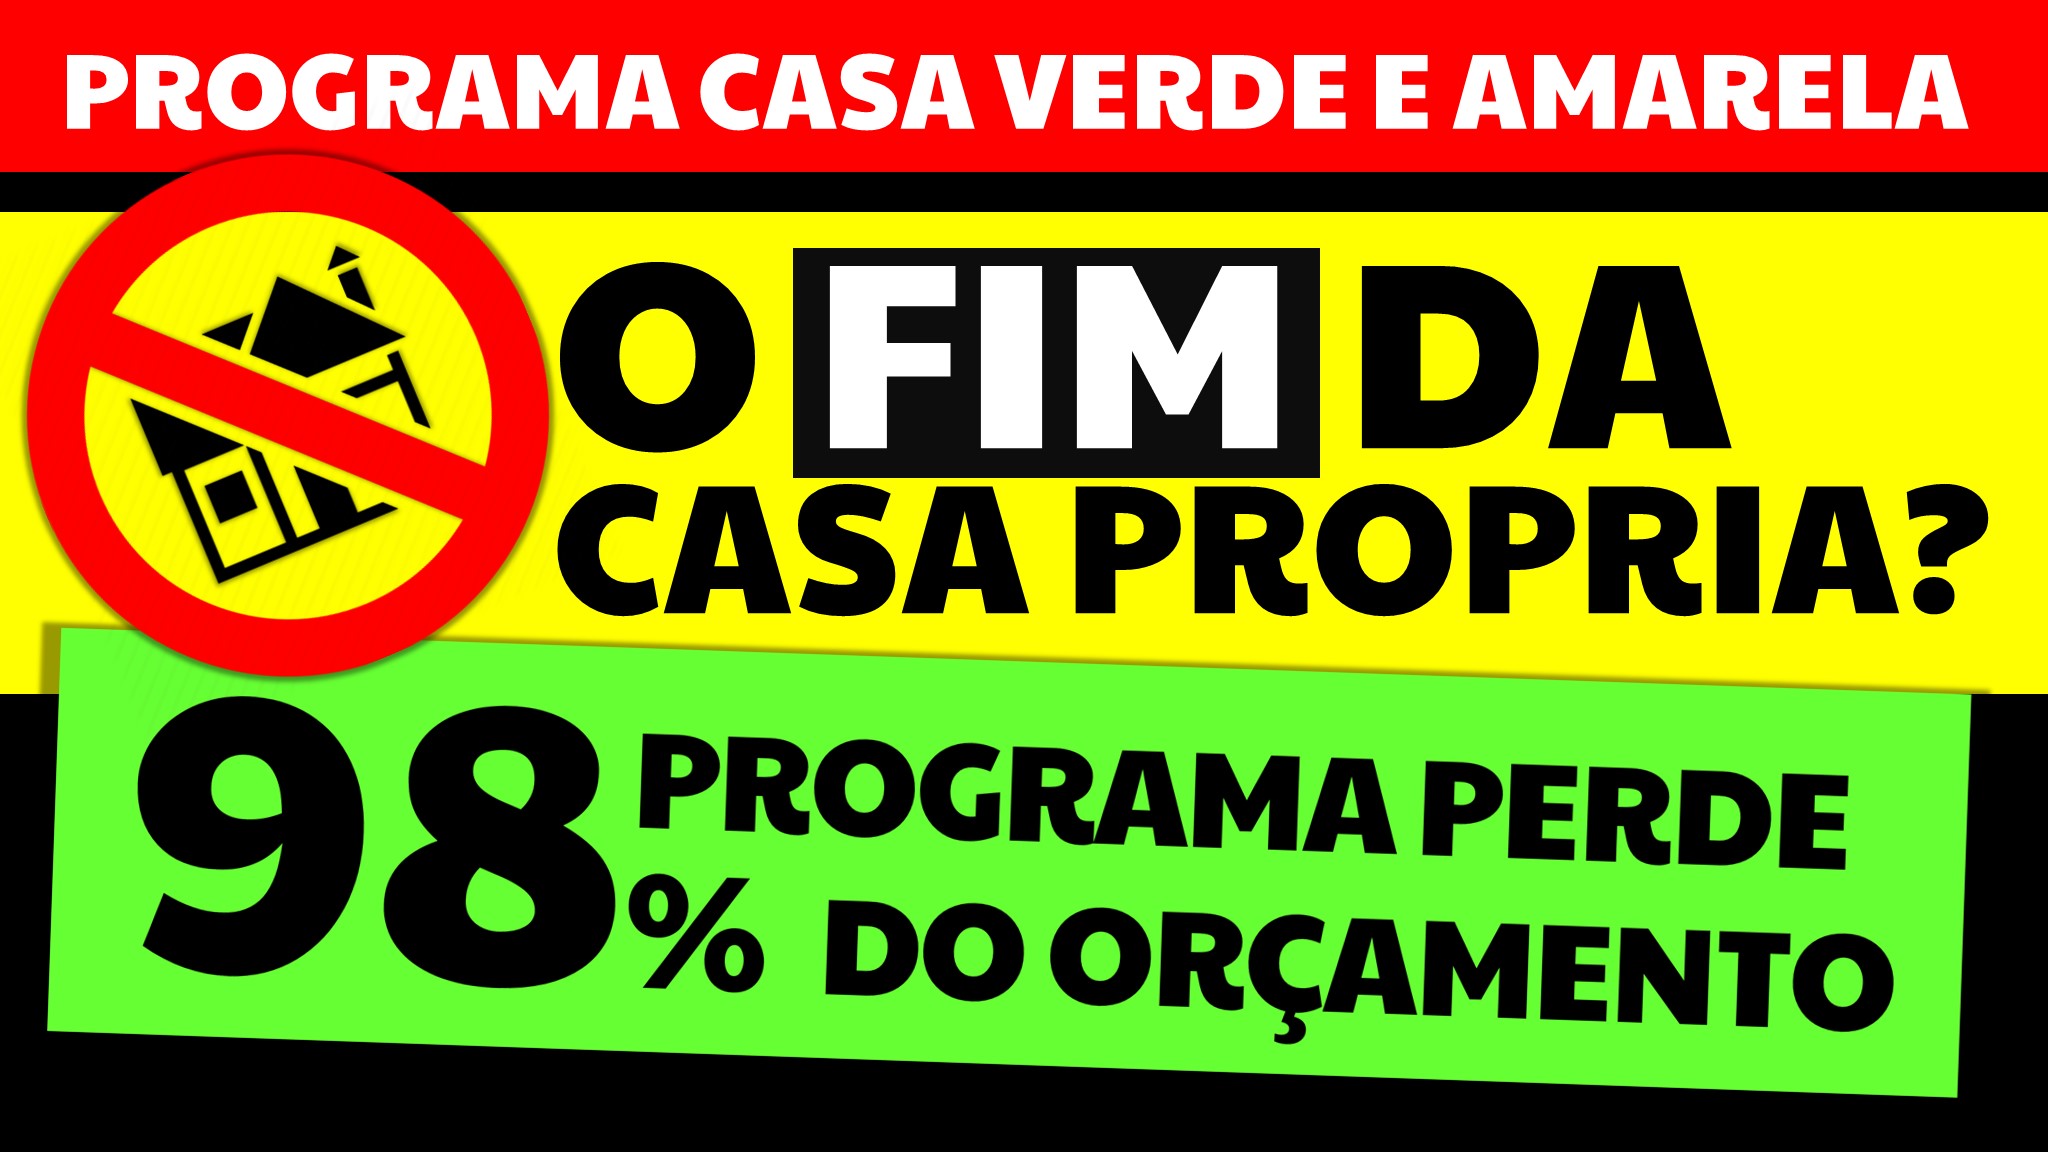 PROGRAMA CASA VERDE E AMARELA FIM DA CASA PRÓPRIA PROGRAMA PERDE 98% DO ORÇAMENTO